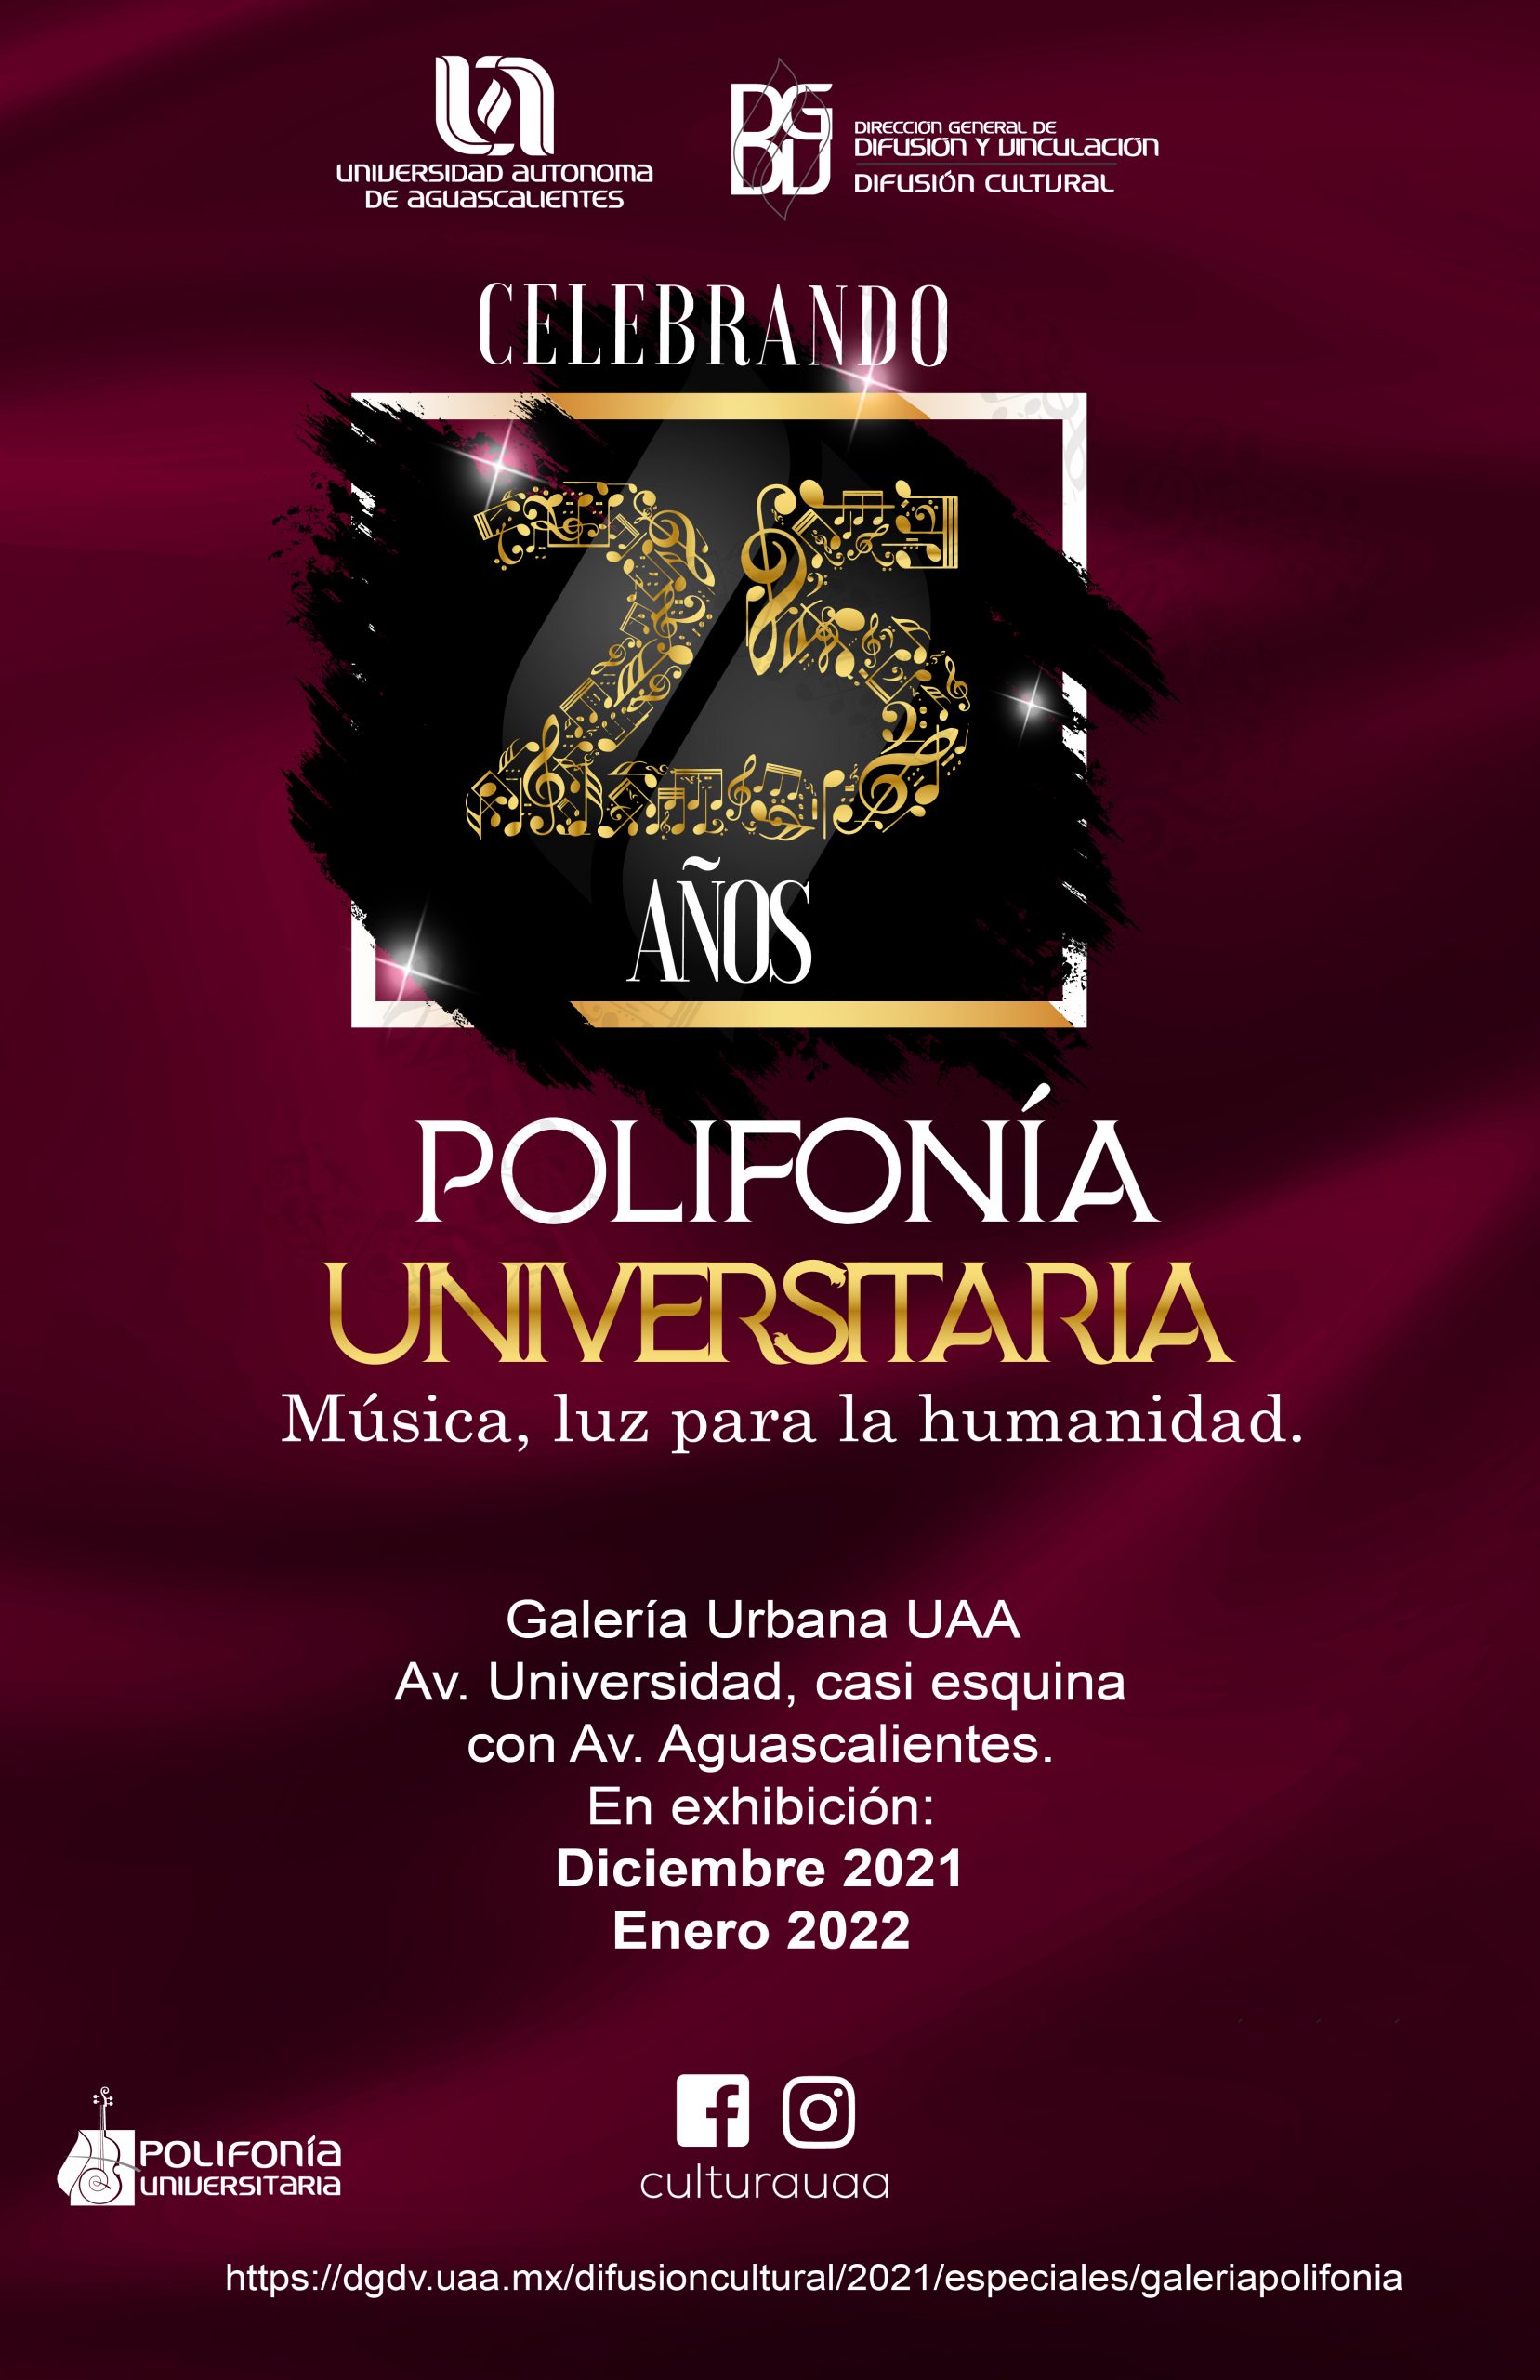 Galería Urbana “25 Aniversario Polifonía Universitaria. Música, luz para la humanidad”